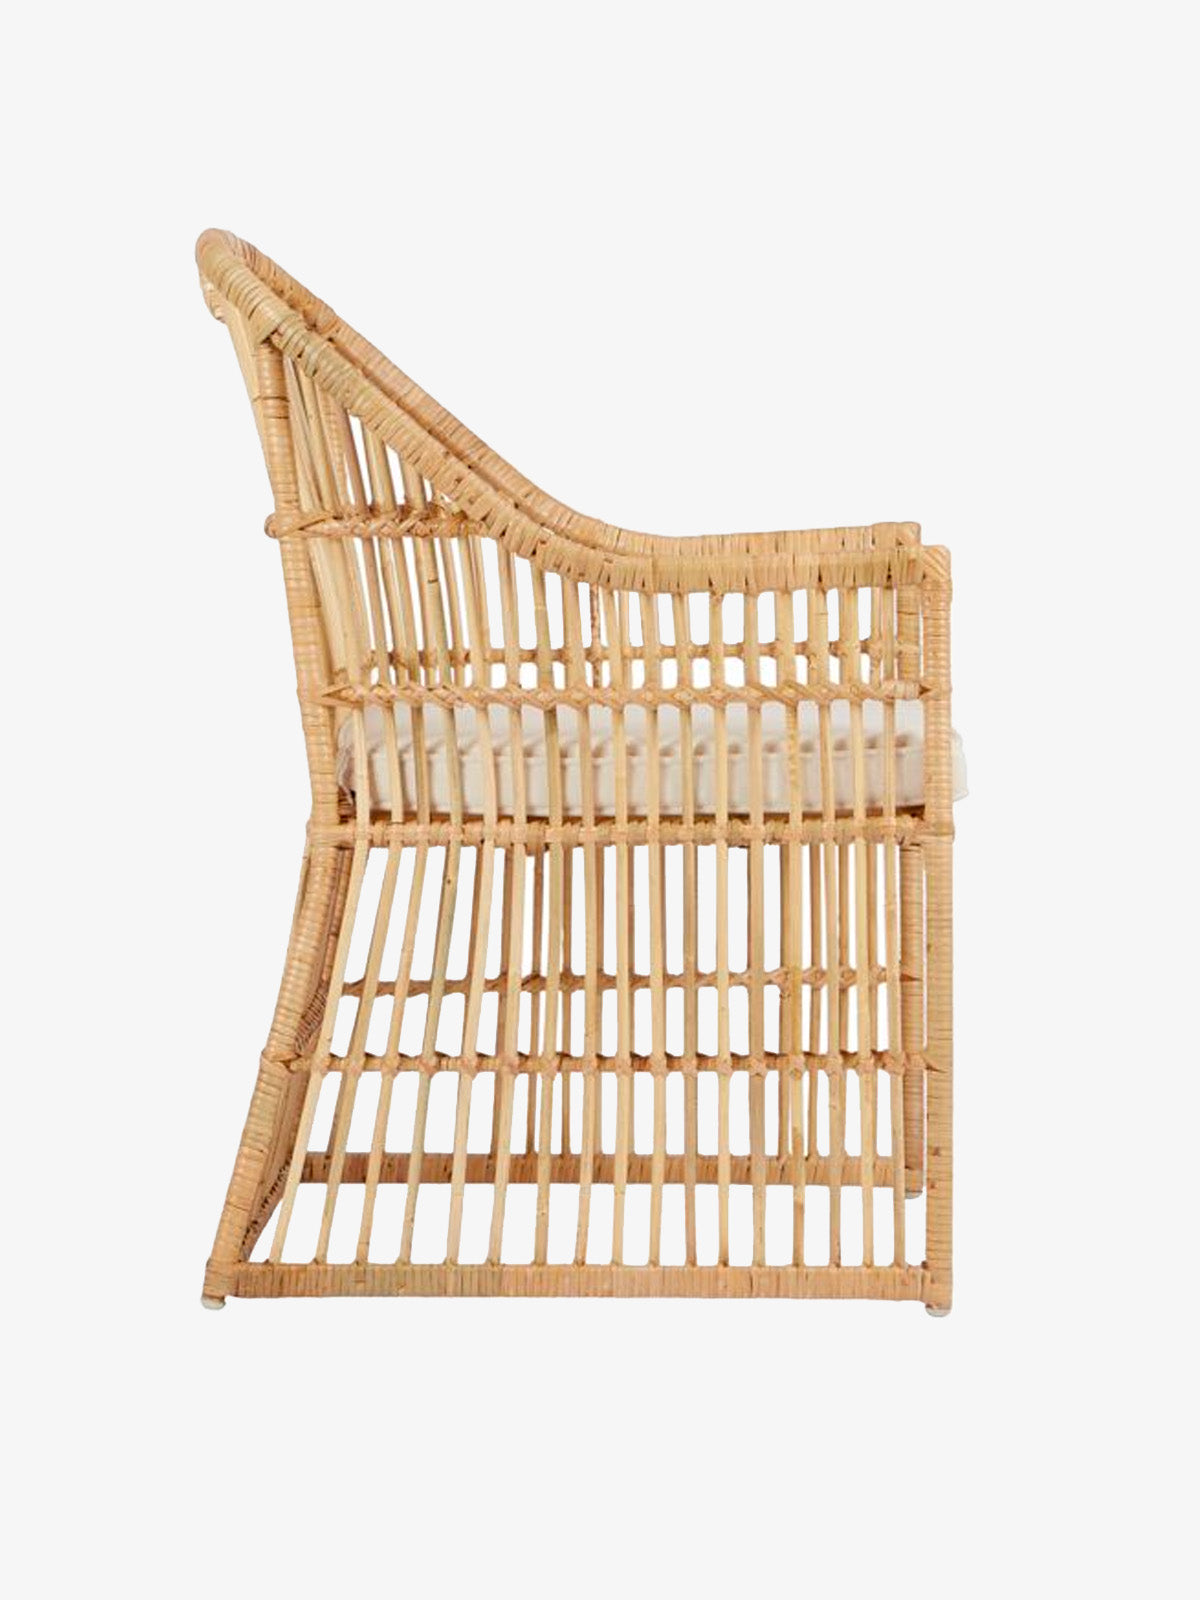 Bali Chair